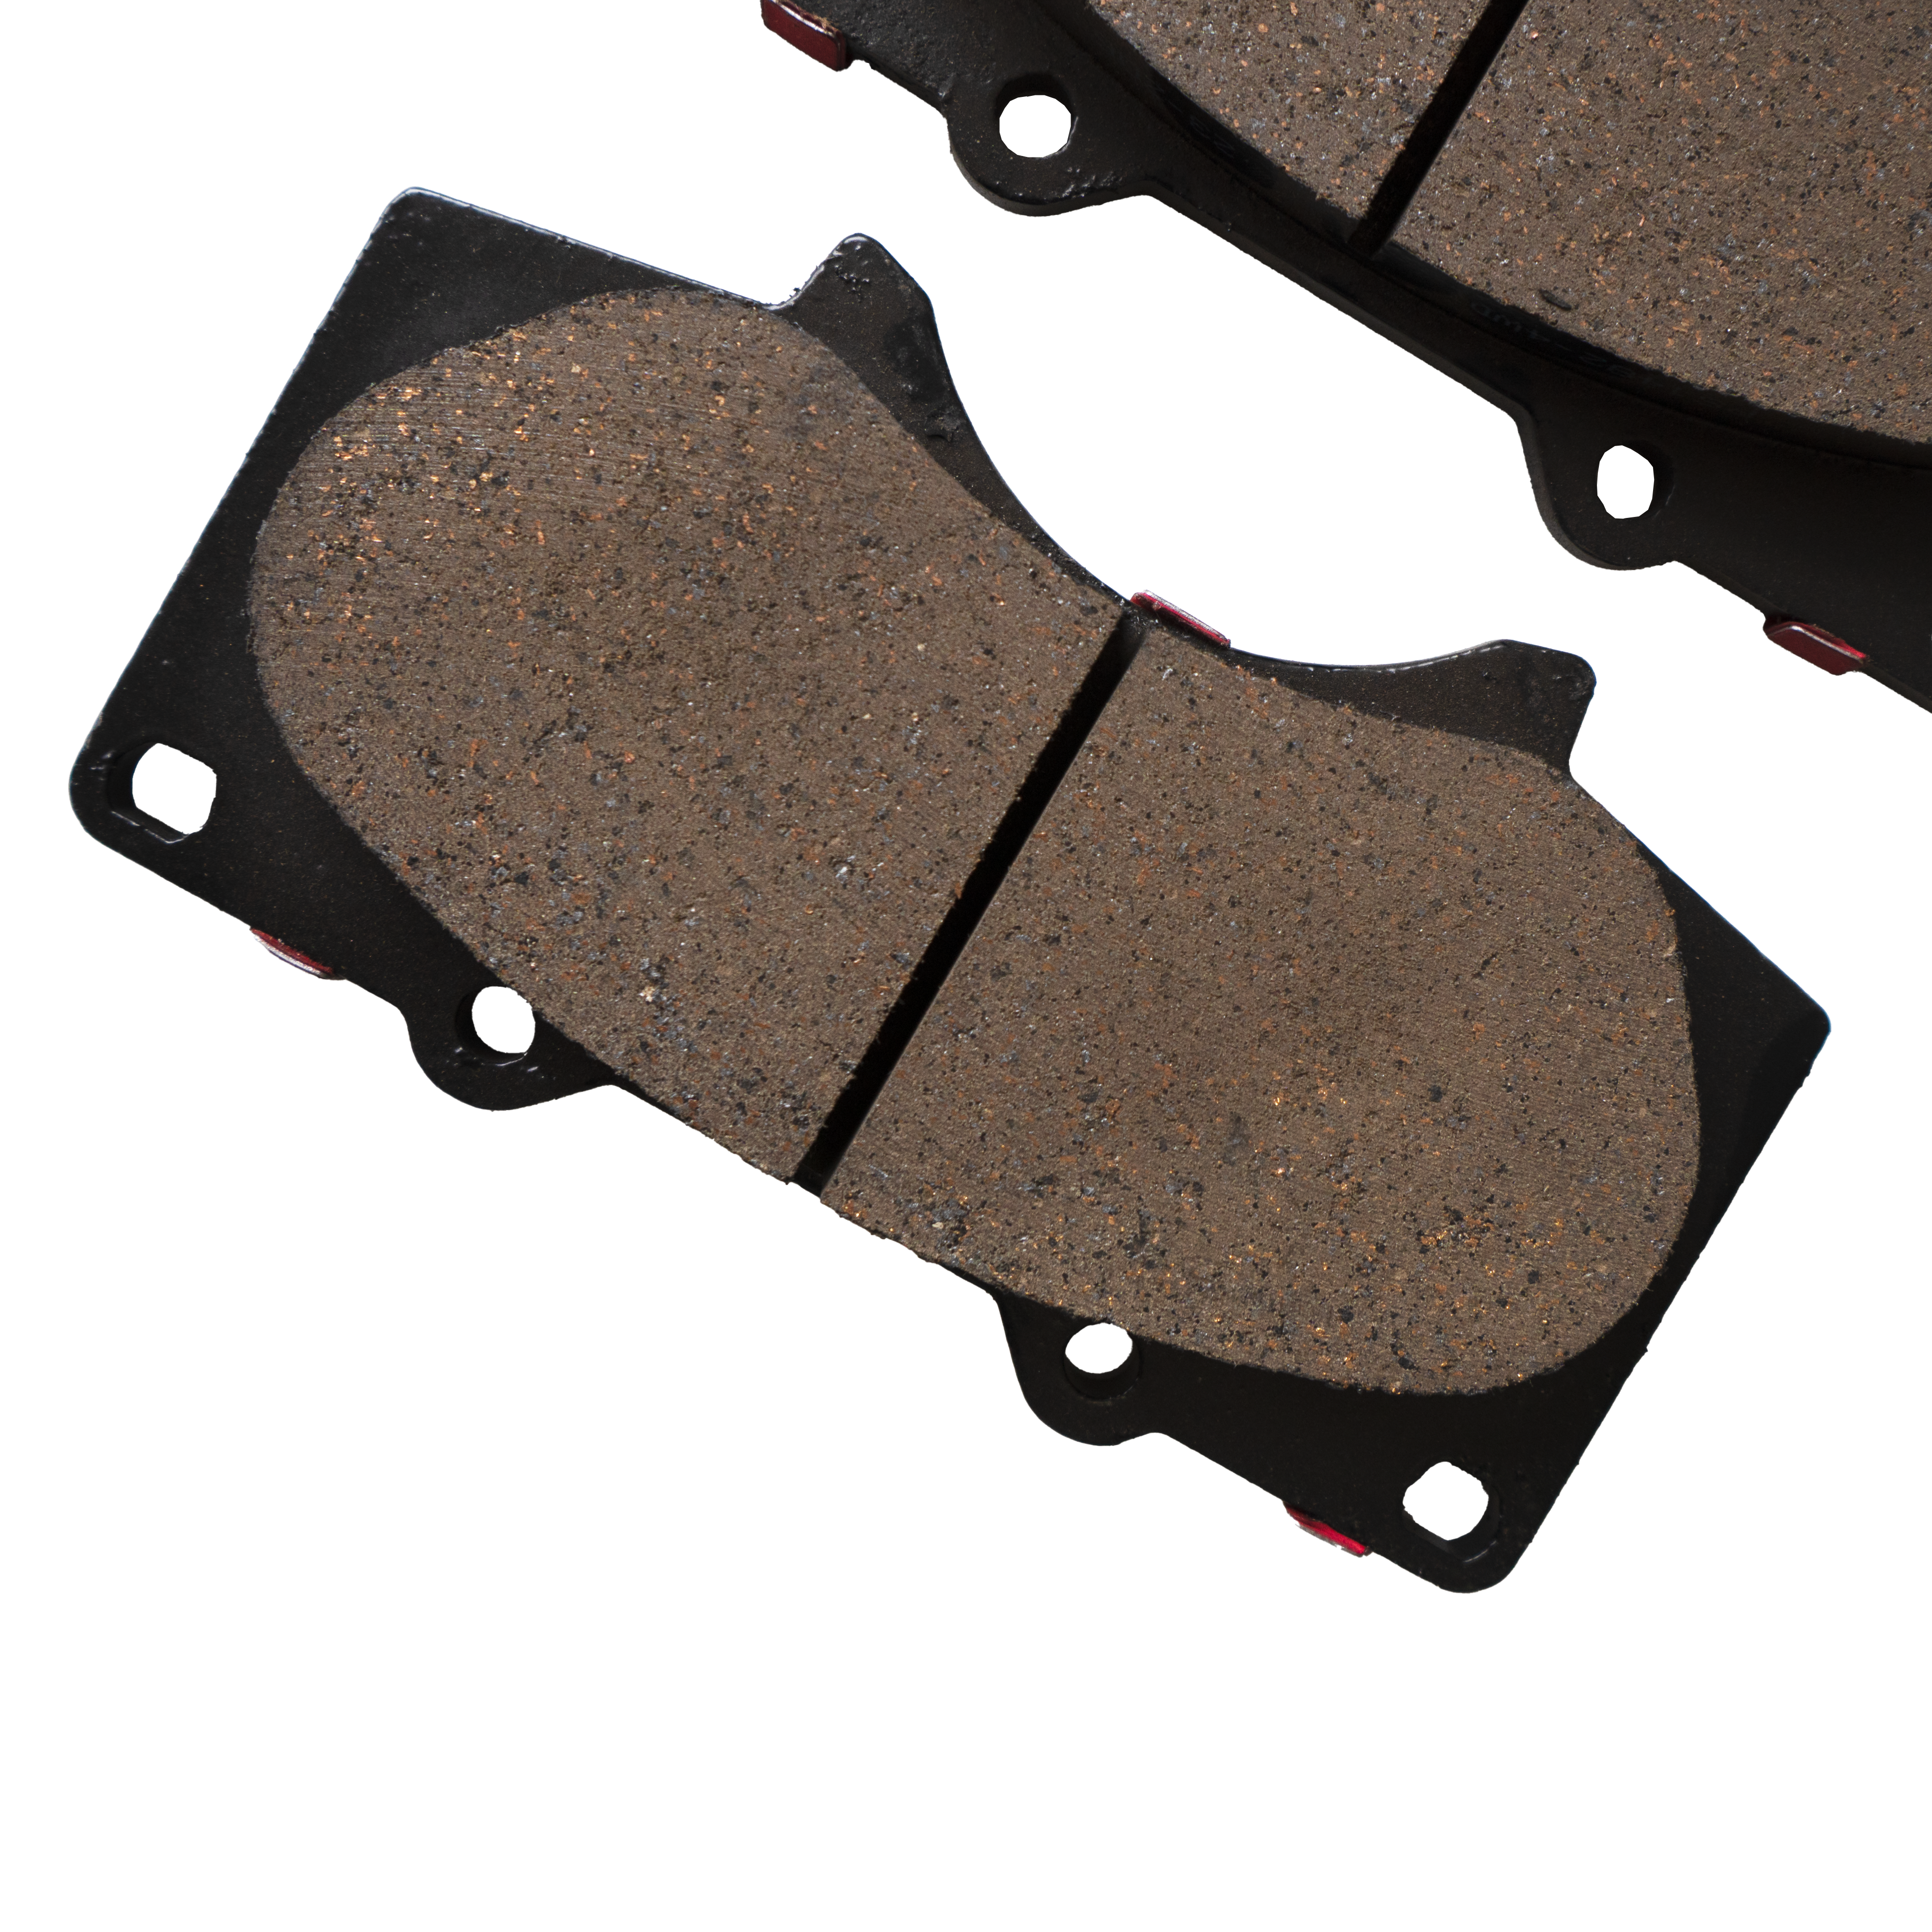 Hilux PowerStop Titanium Ceramic FRONT Brake Pads